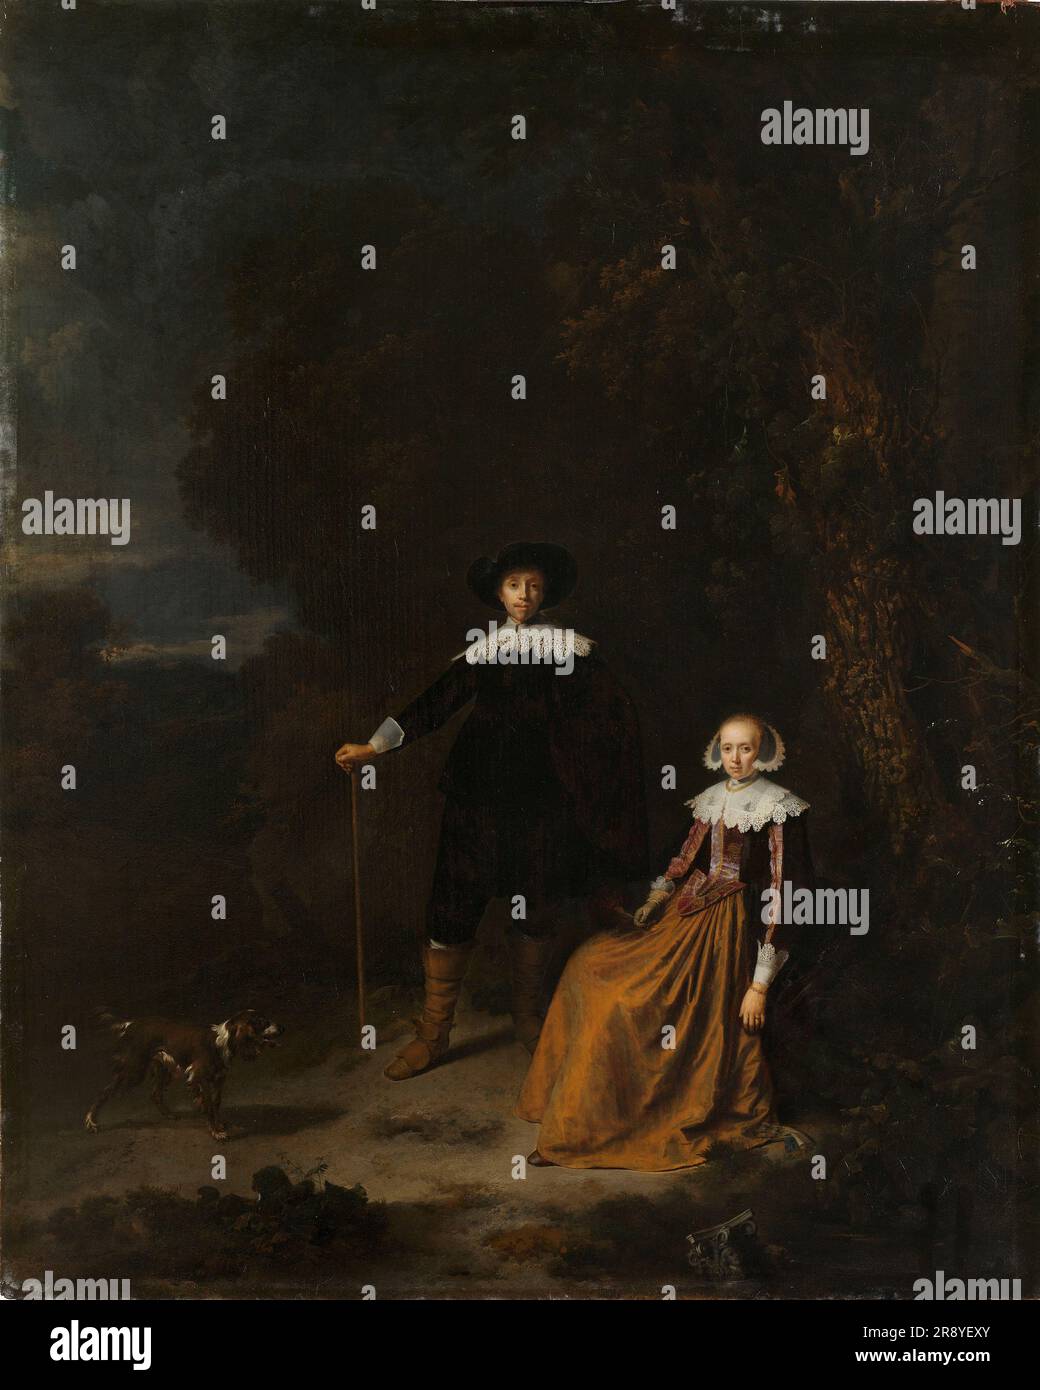 Ritratto di una coppia in un paesaggio, 1630-1675. Altri titoli: Ritratto di una coppia, che si pensa sia Adriaen Wittert van der AA e Maria Knotter. Foto Stock